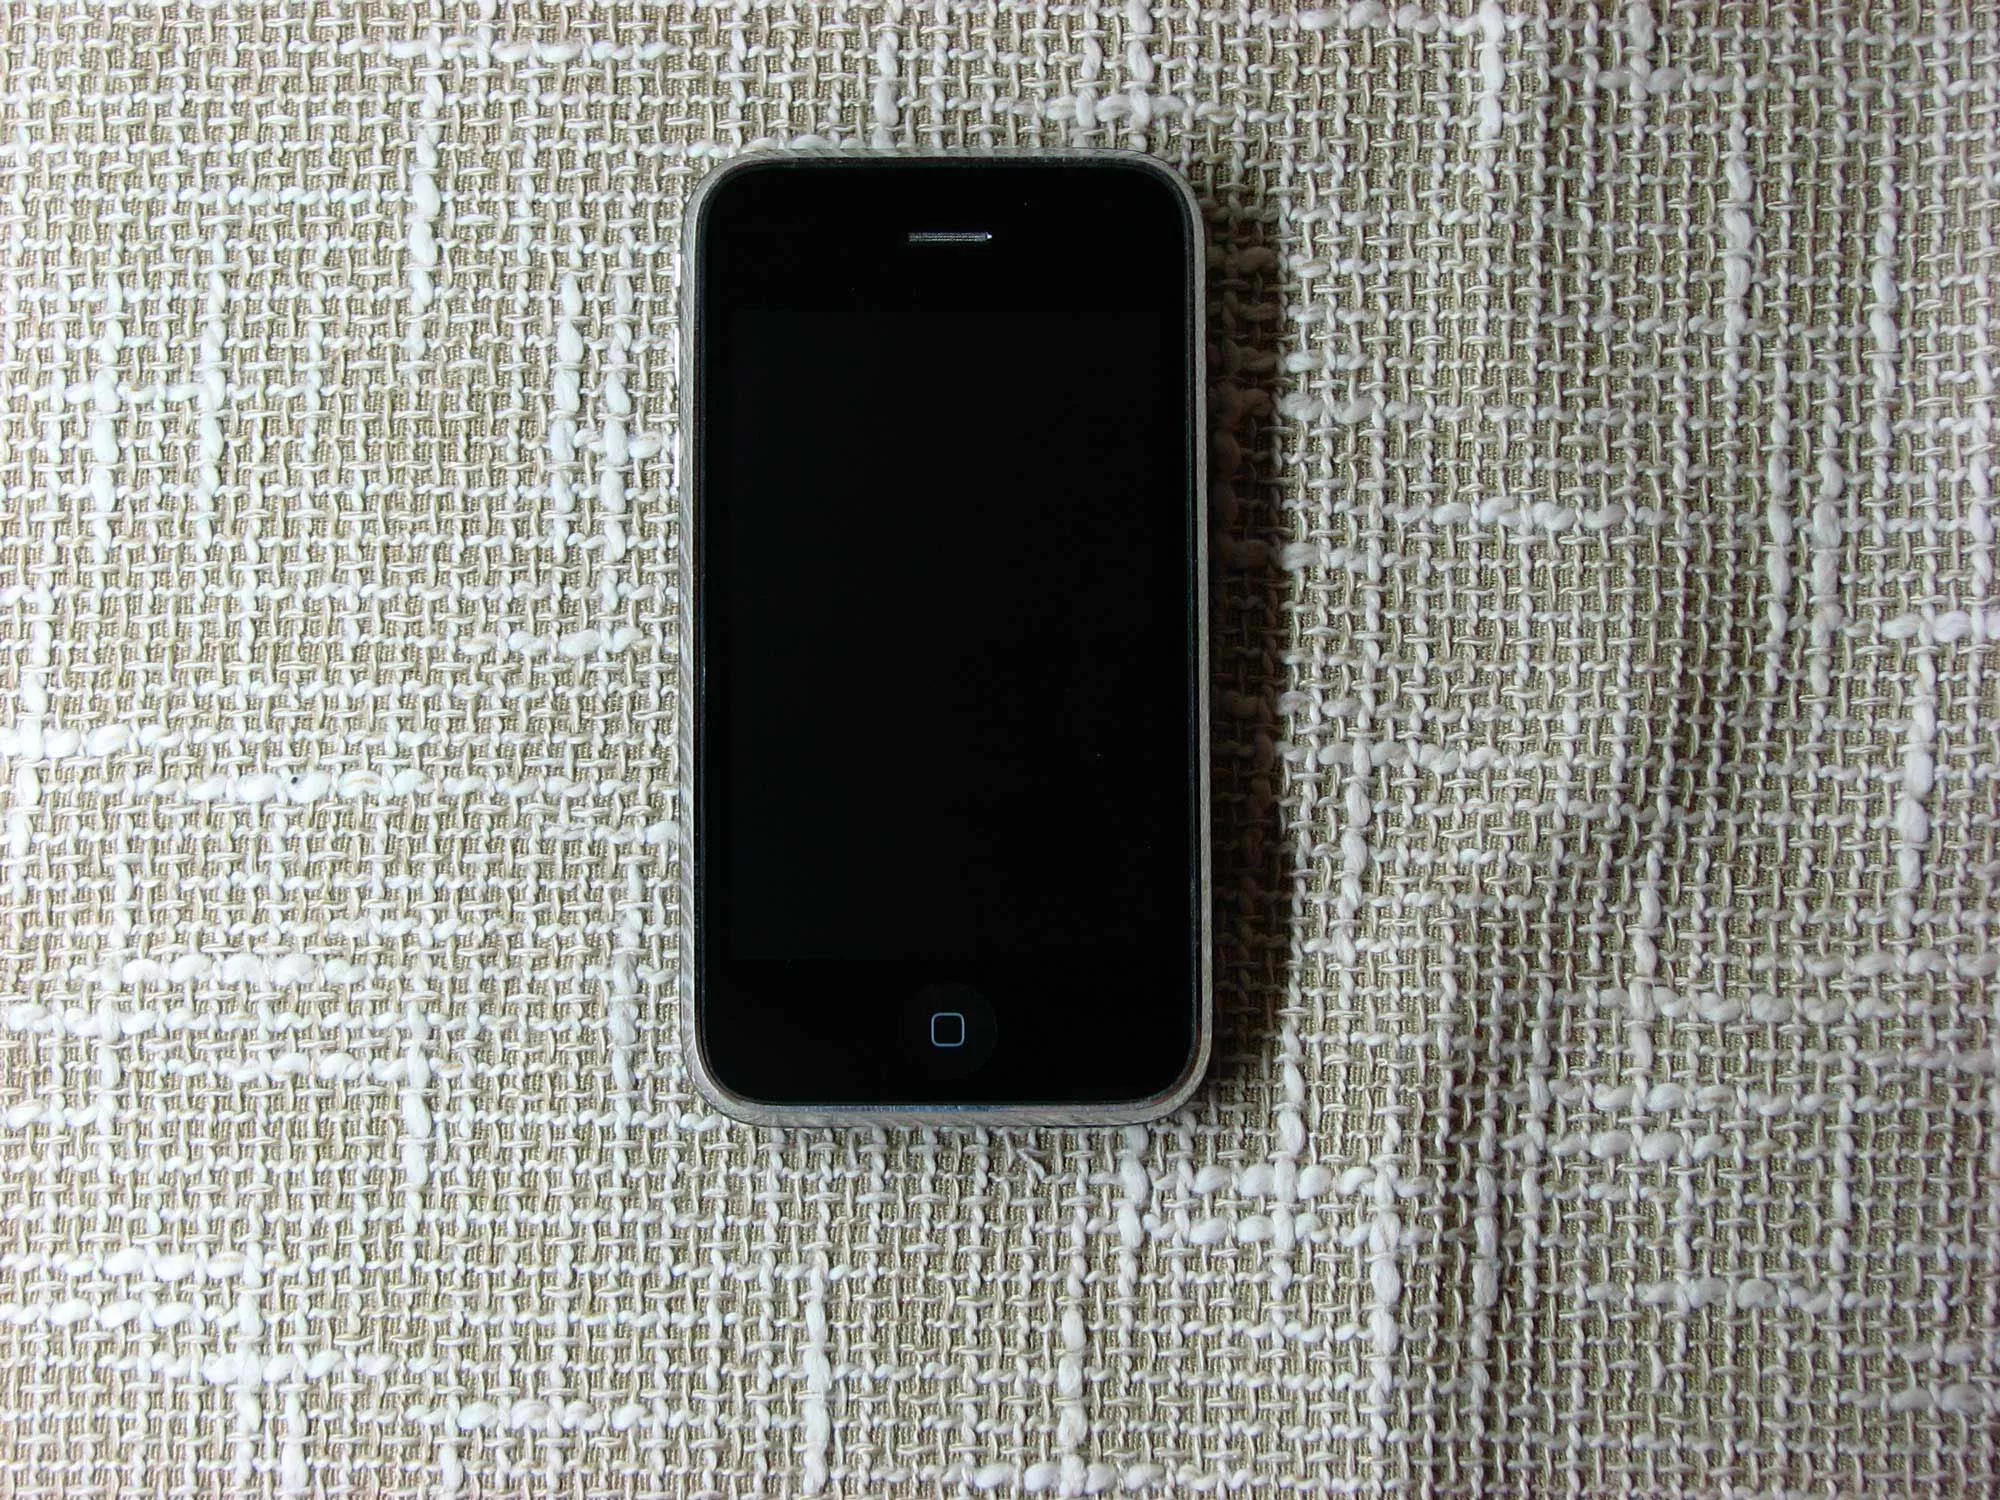 Айфон 3Gs 16Gb, черный цвет, купить Apple iPhone 3Gs